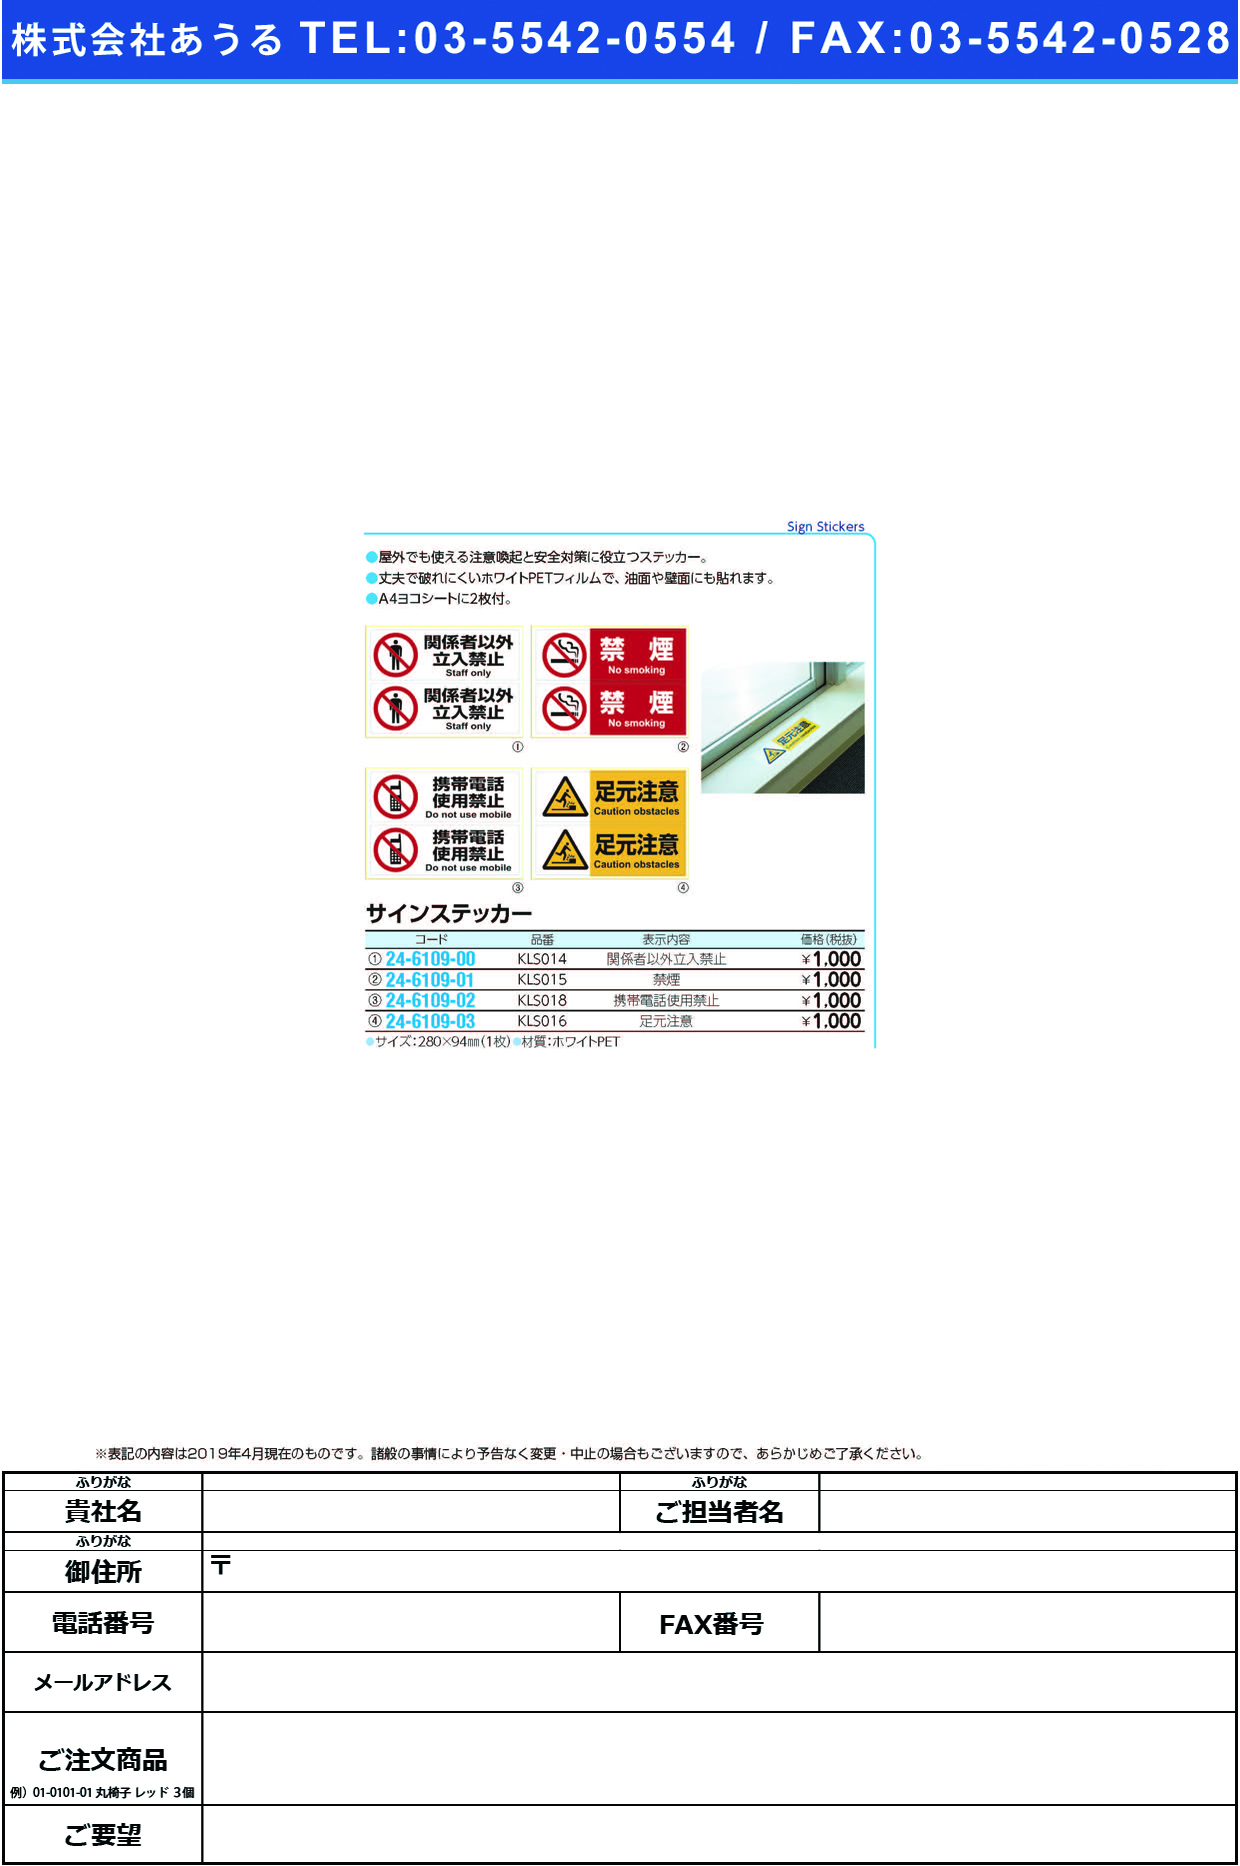 (24-6109-01)サインステッカー「禁煙」 KLS015(2ﾒﾝ) ｻｲﾝｽﾃｯｶｰ【1枚単位】【2019年カタログ商品】